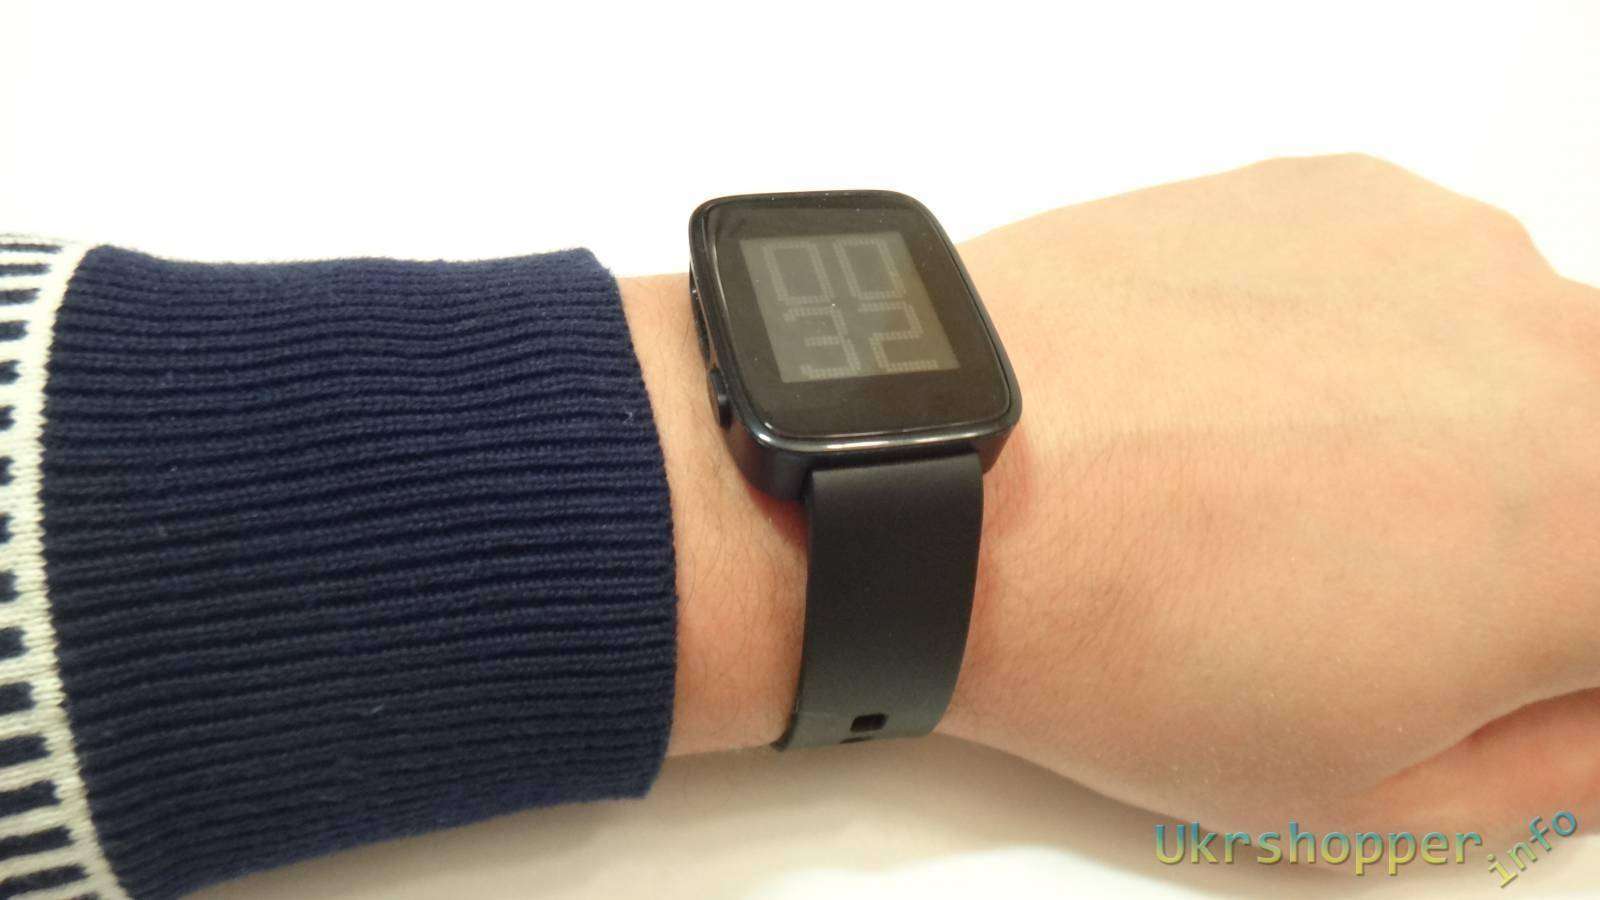 GearBest: Weloop Tommy - умные часы - все что вы хотели знать, но боялись спросить огромный обзор!